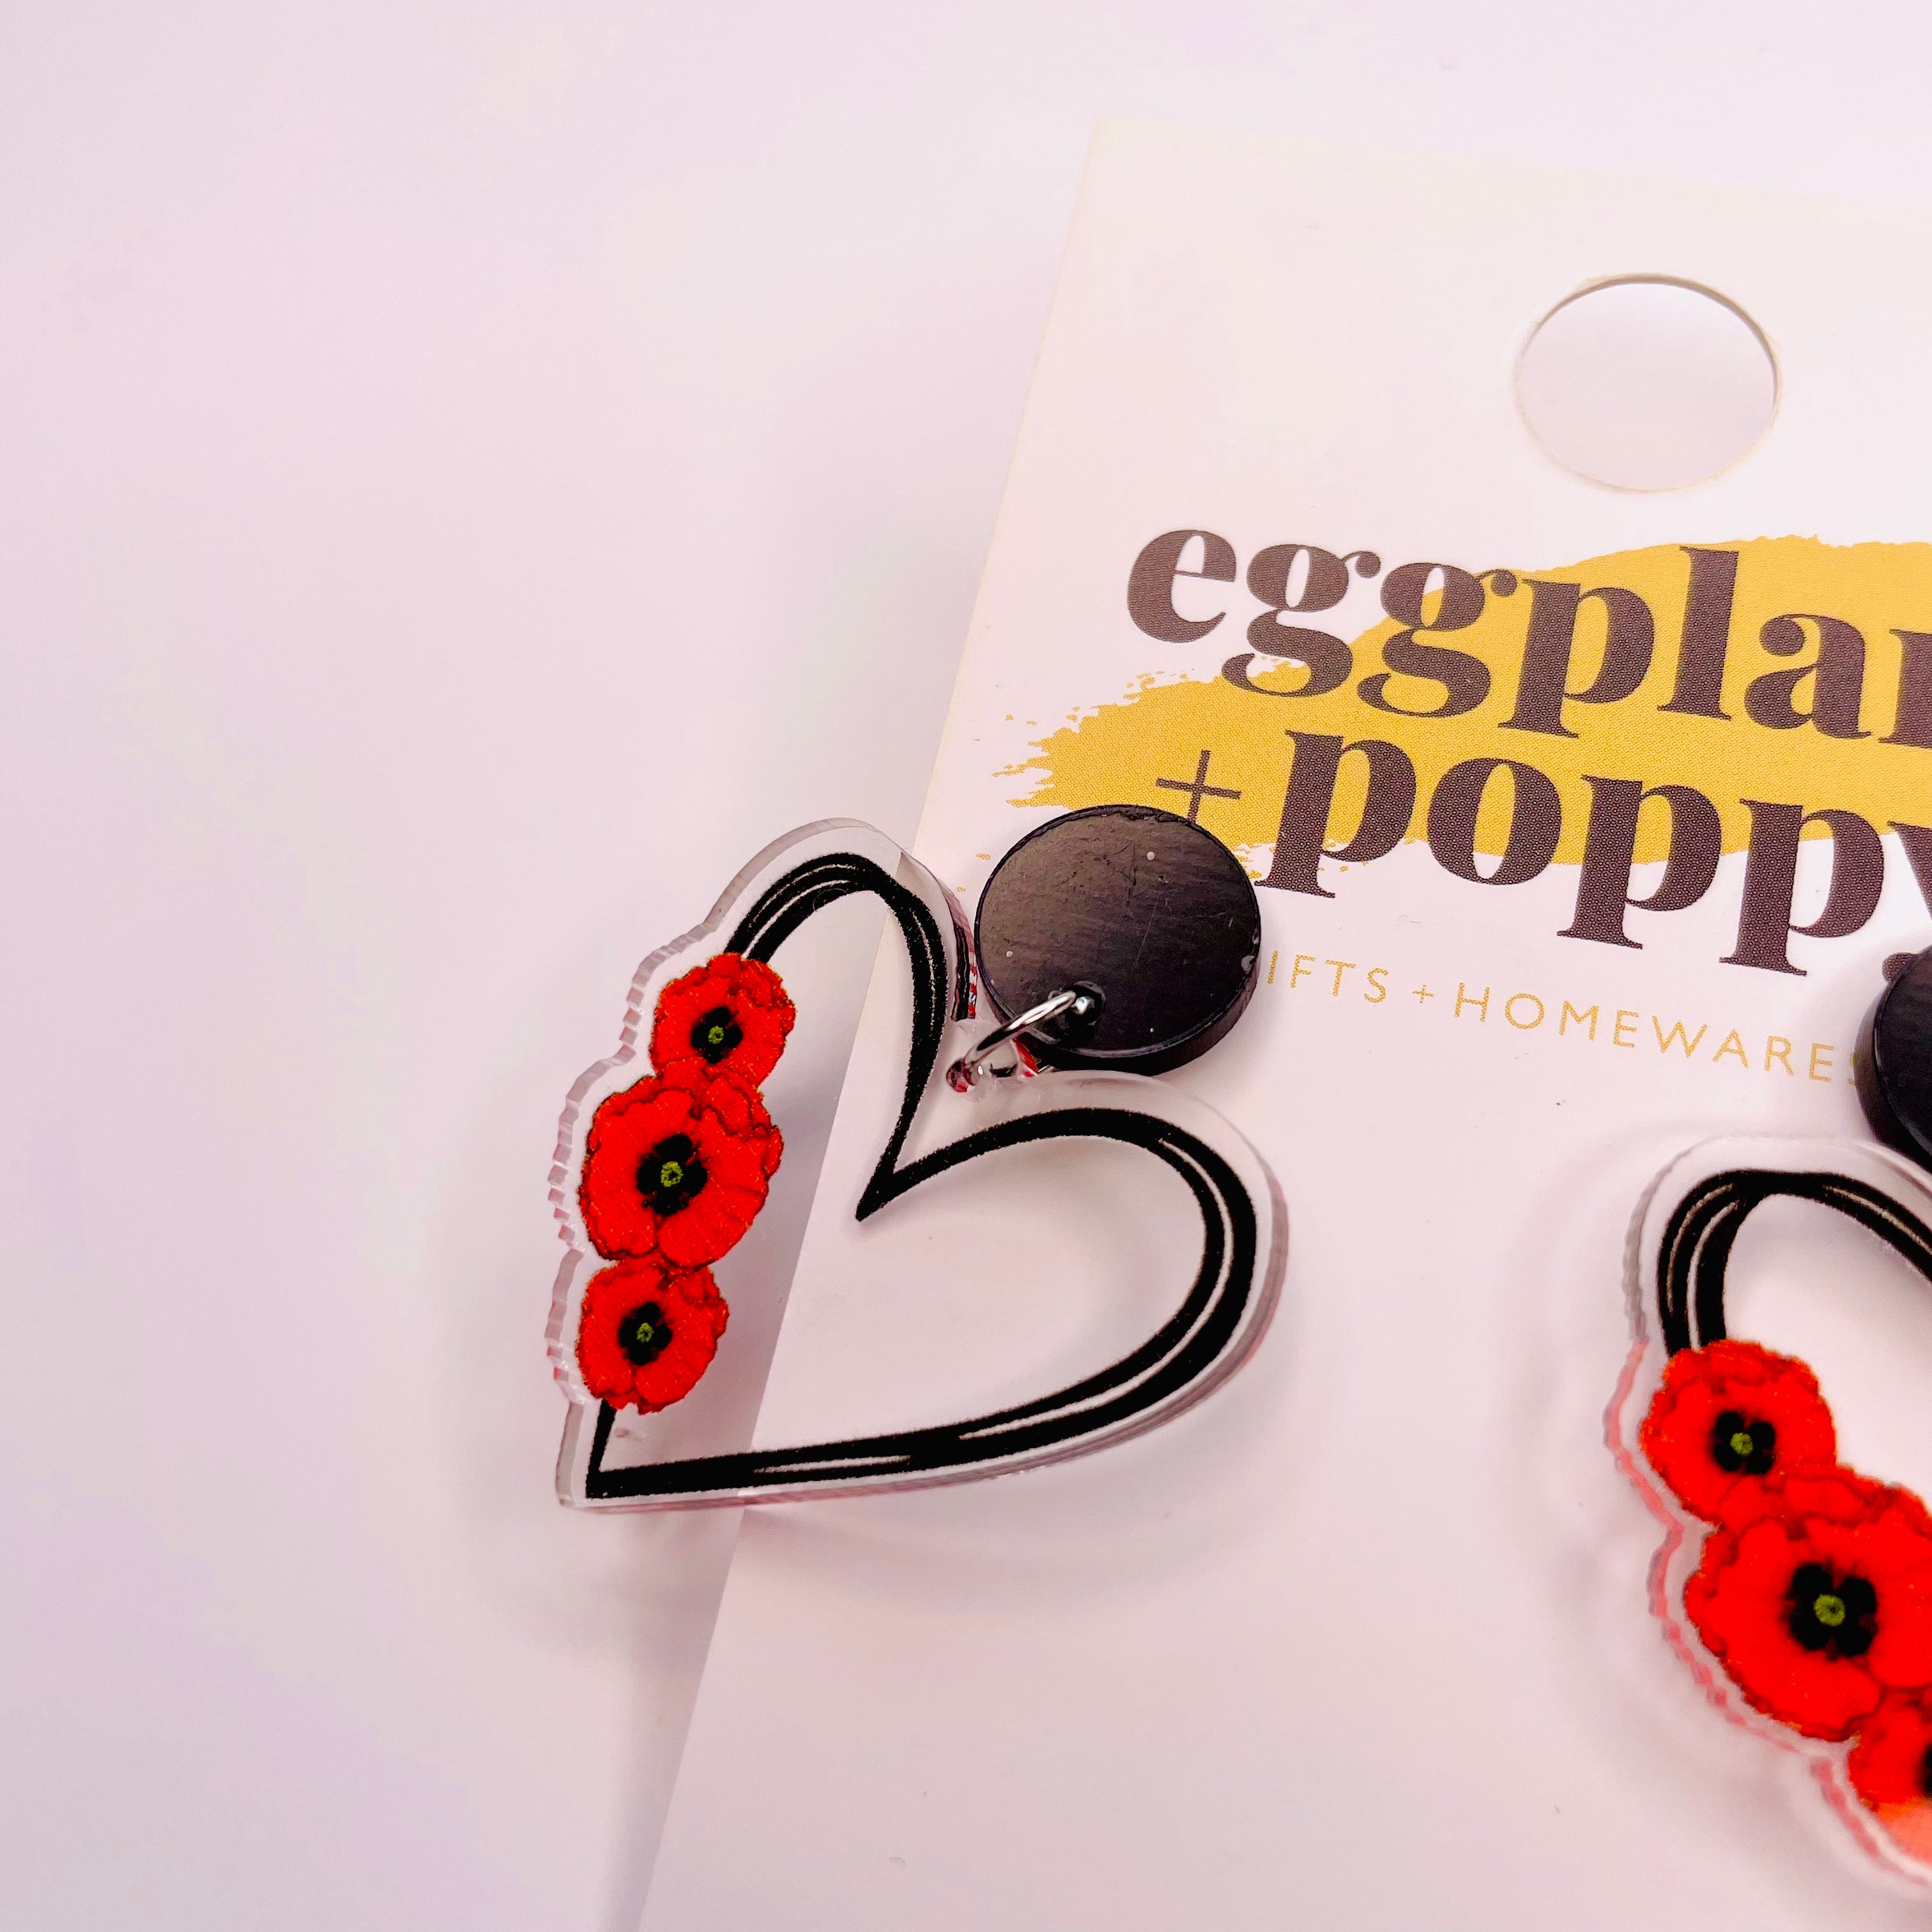 Poppy Love Heart Earrings